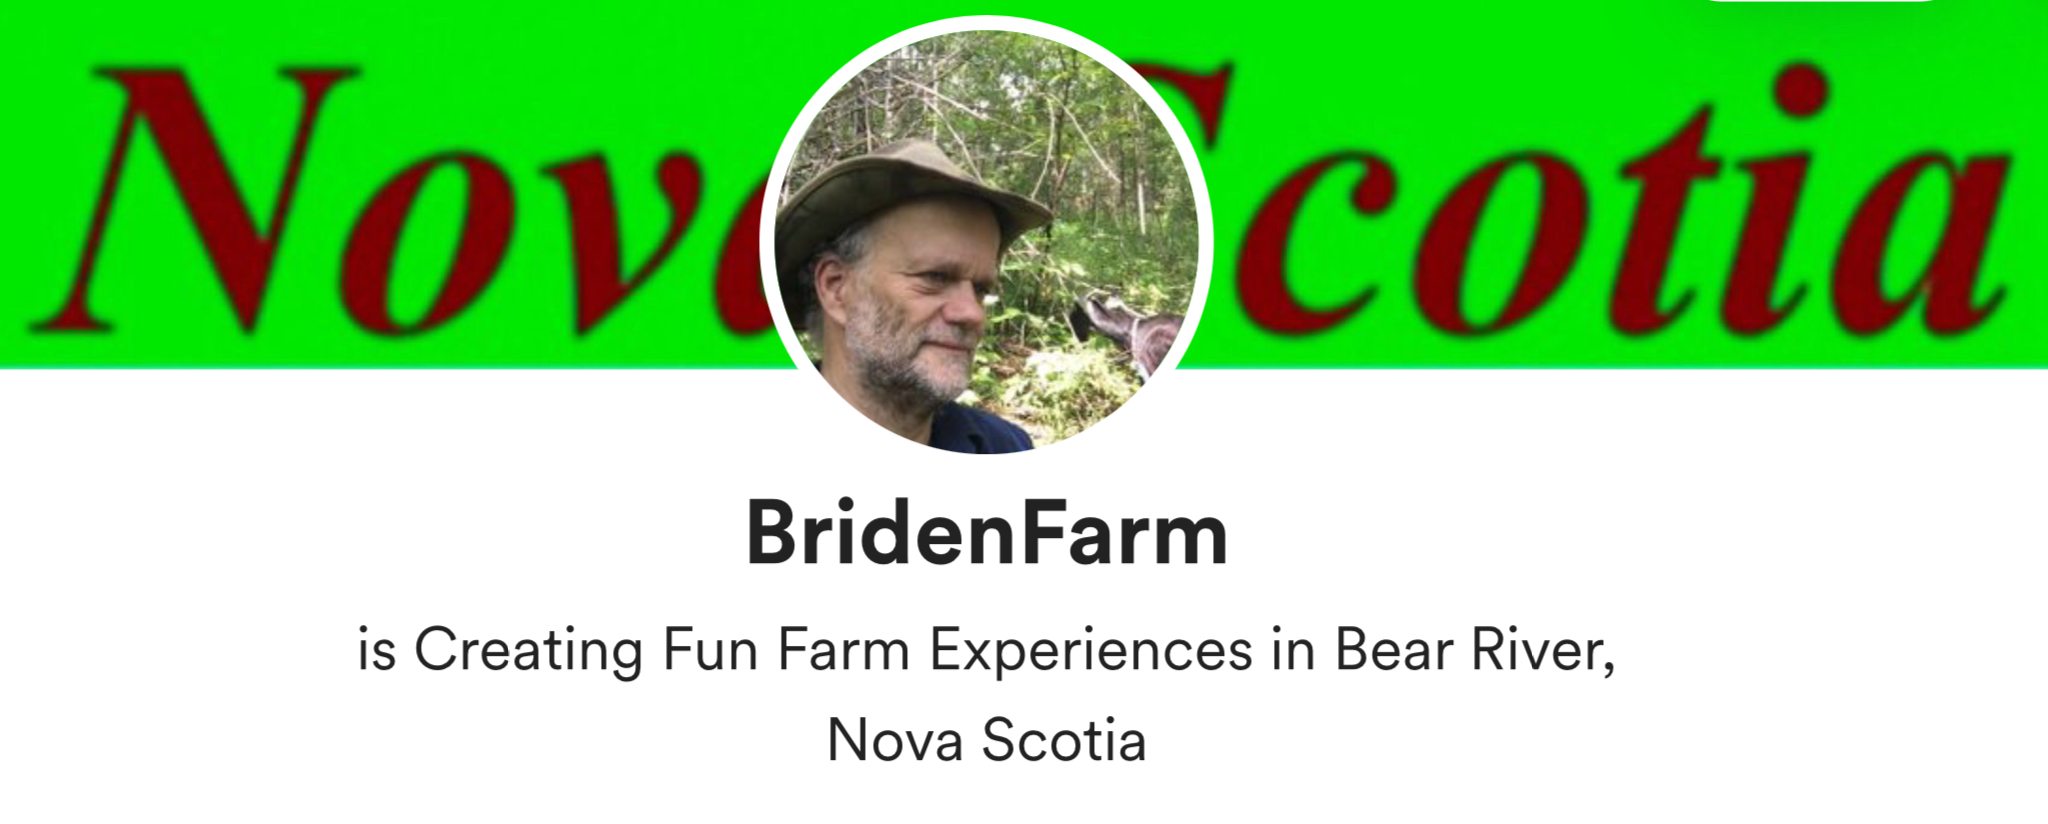 Briden Farm Creating Fun Farm Experiences